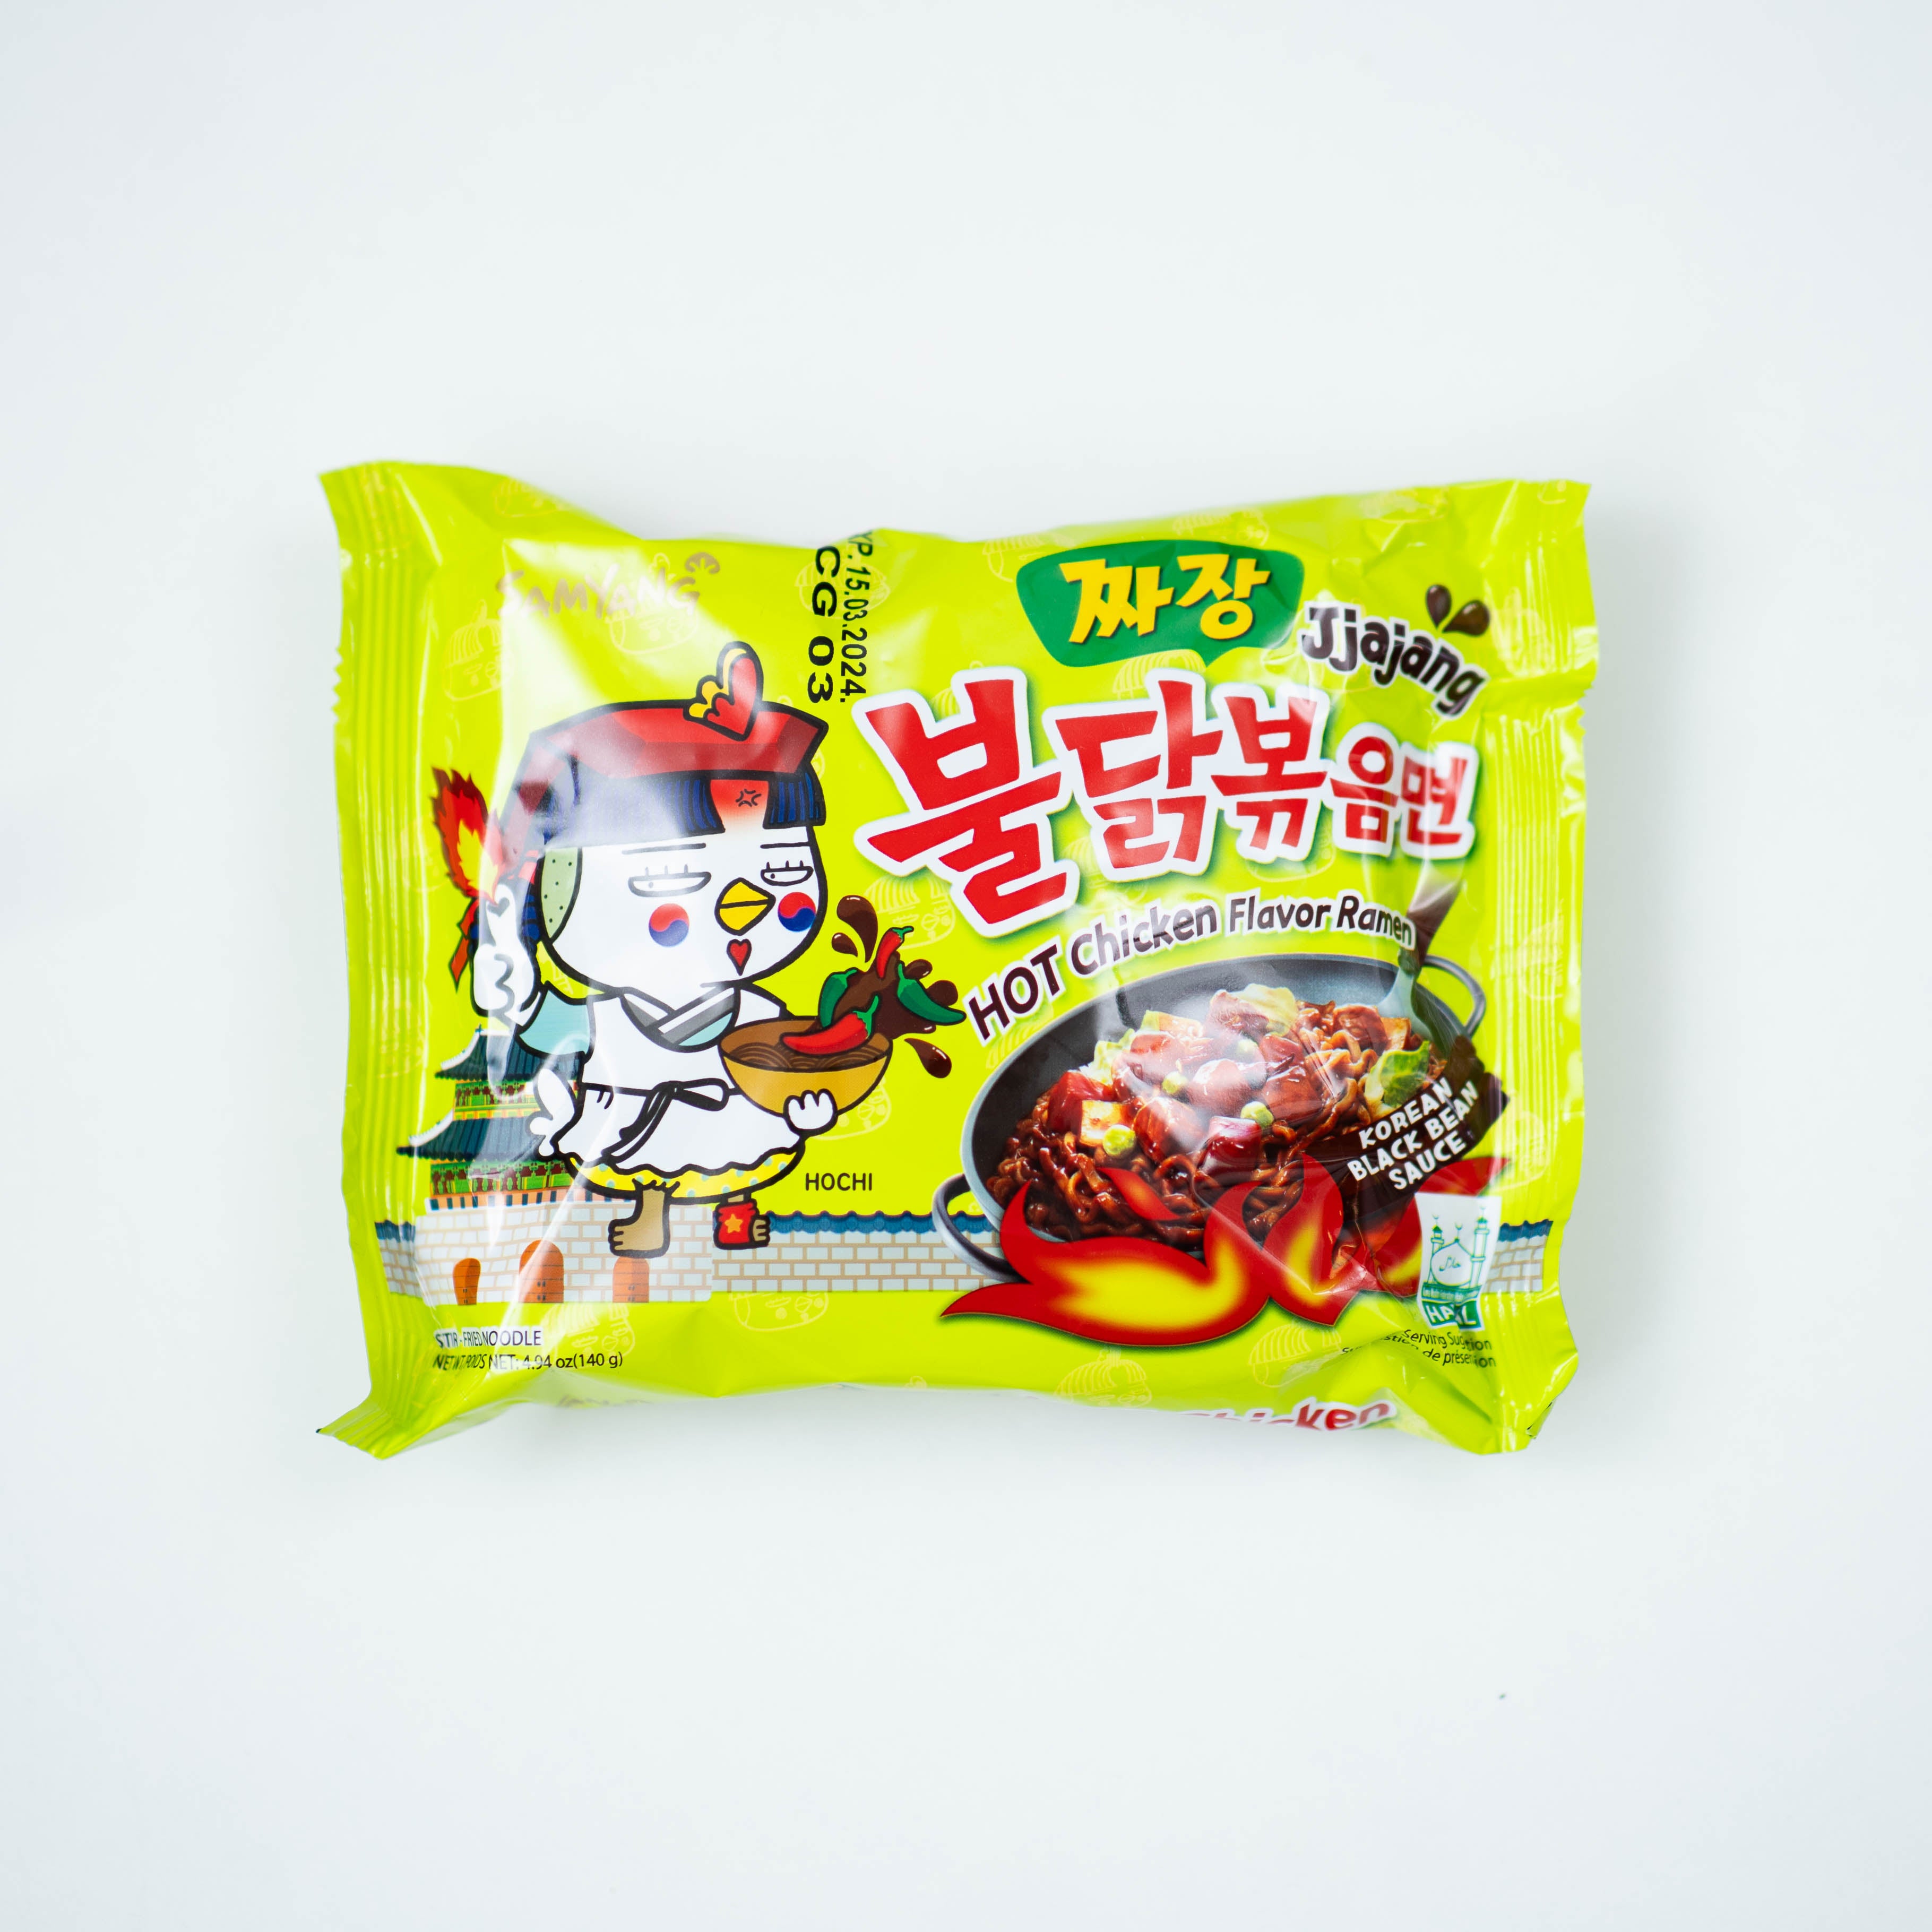 onlineshop dinese.de buldak samyang jjajang hot chicken flavor ramen asiashop asiatische lebensmittel